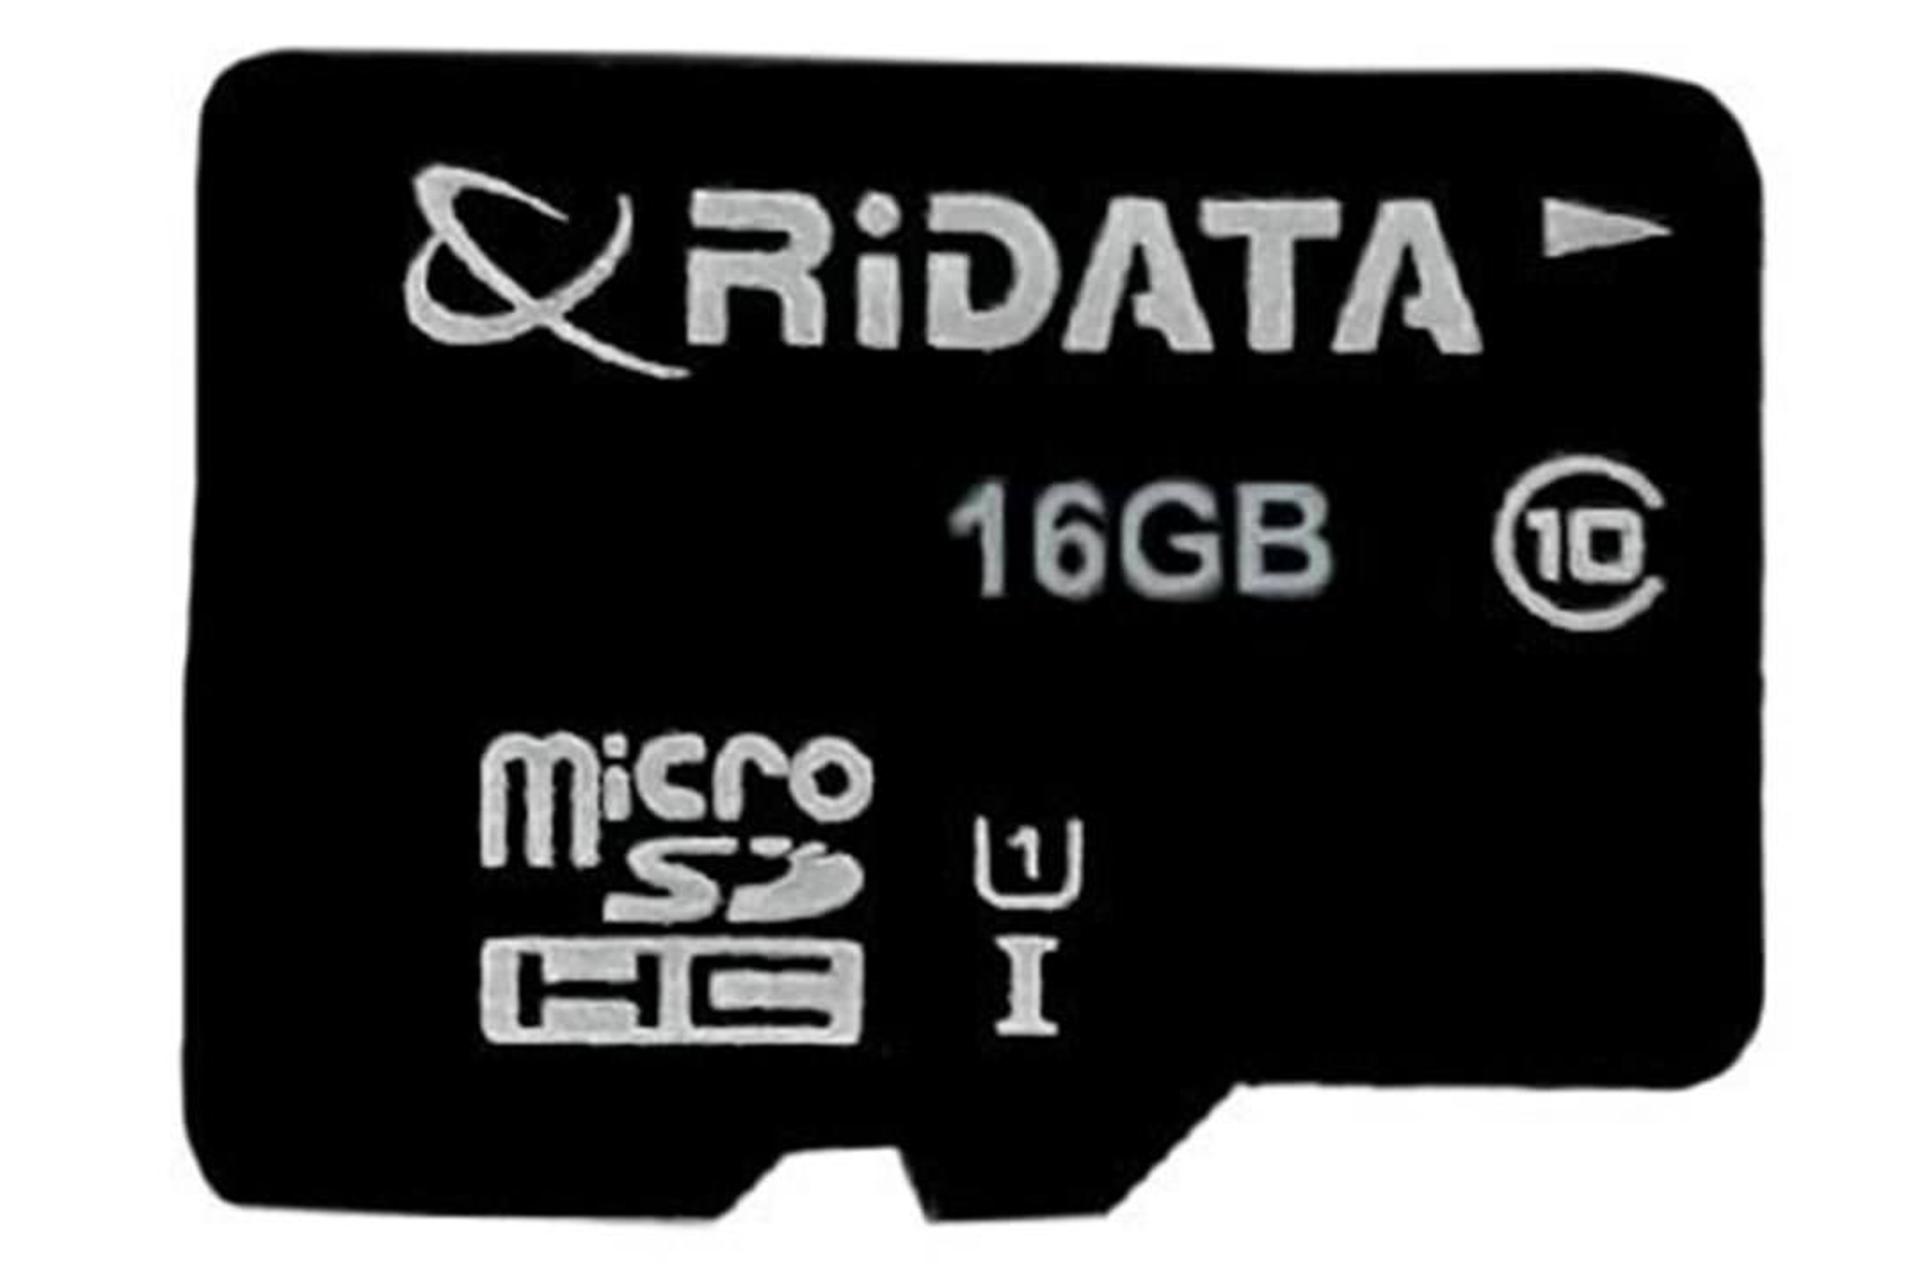 مرجع متخصصين ايران RiDATA High Speed microSDHC Class 10 UHS-I U1 16GB